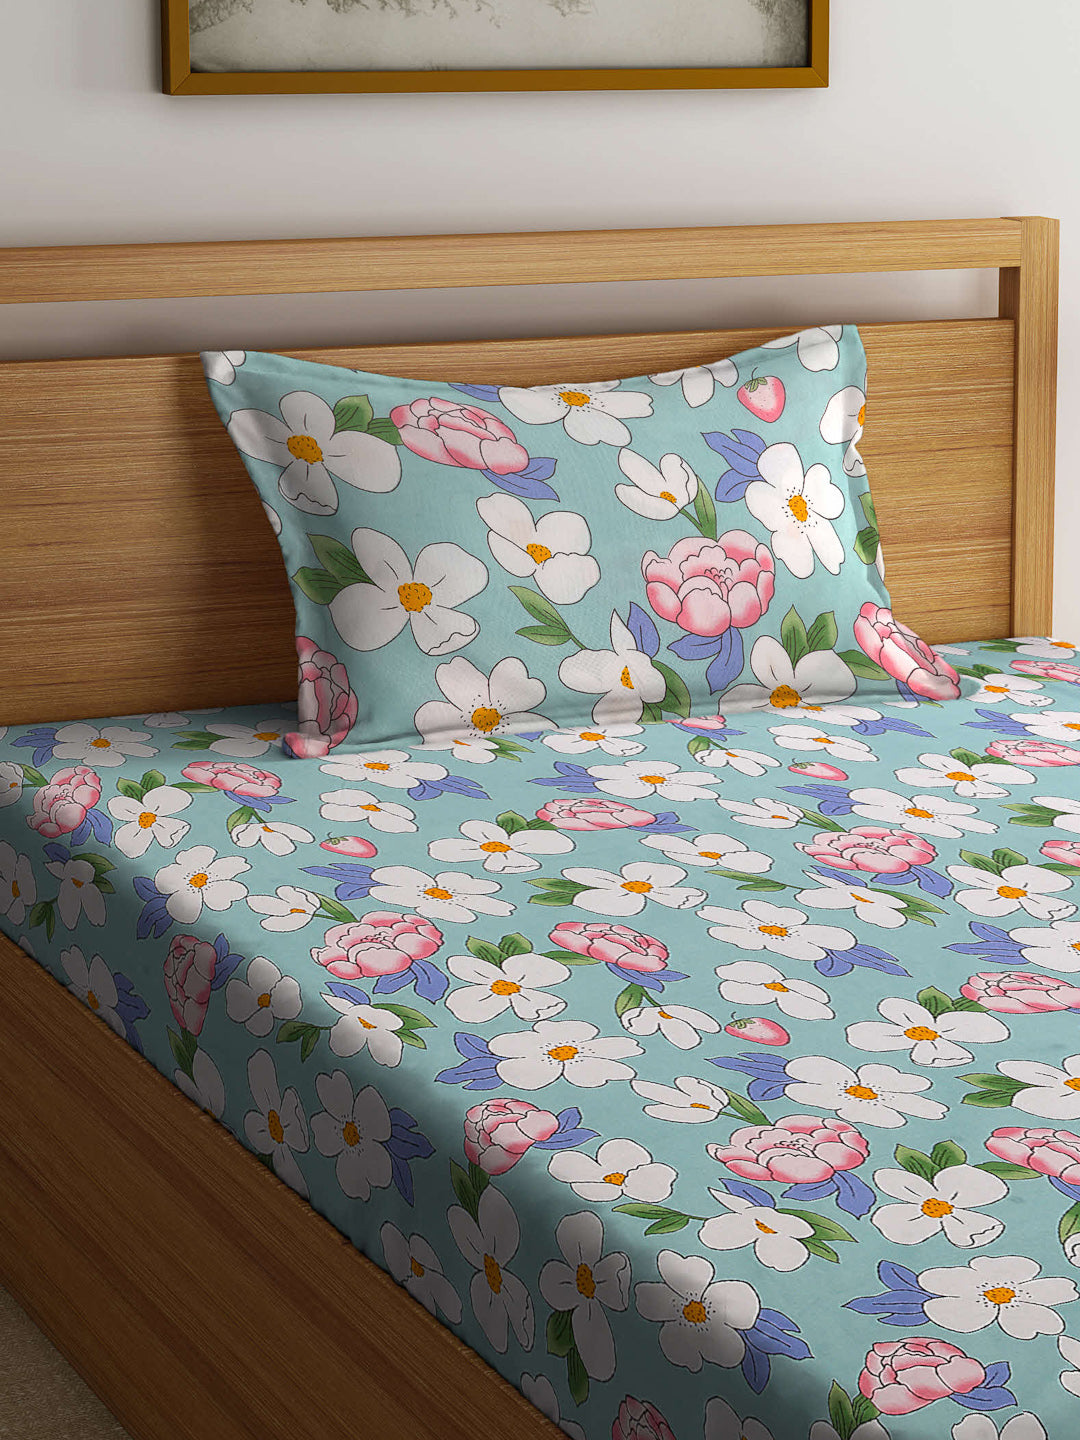 Arrabi Blue Floral TC Cotton Blend Single Size Bedsheet with 1 Pillow Cover (215 x 150 cm)